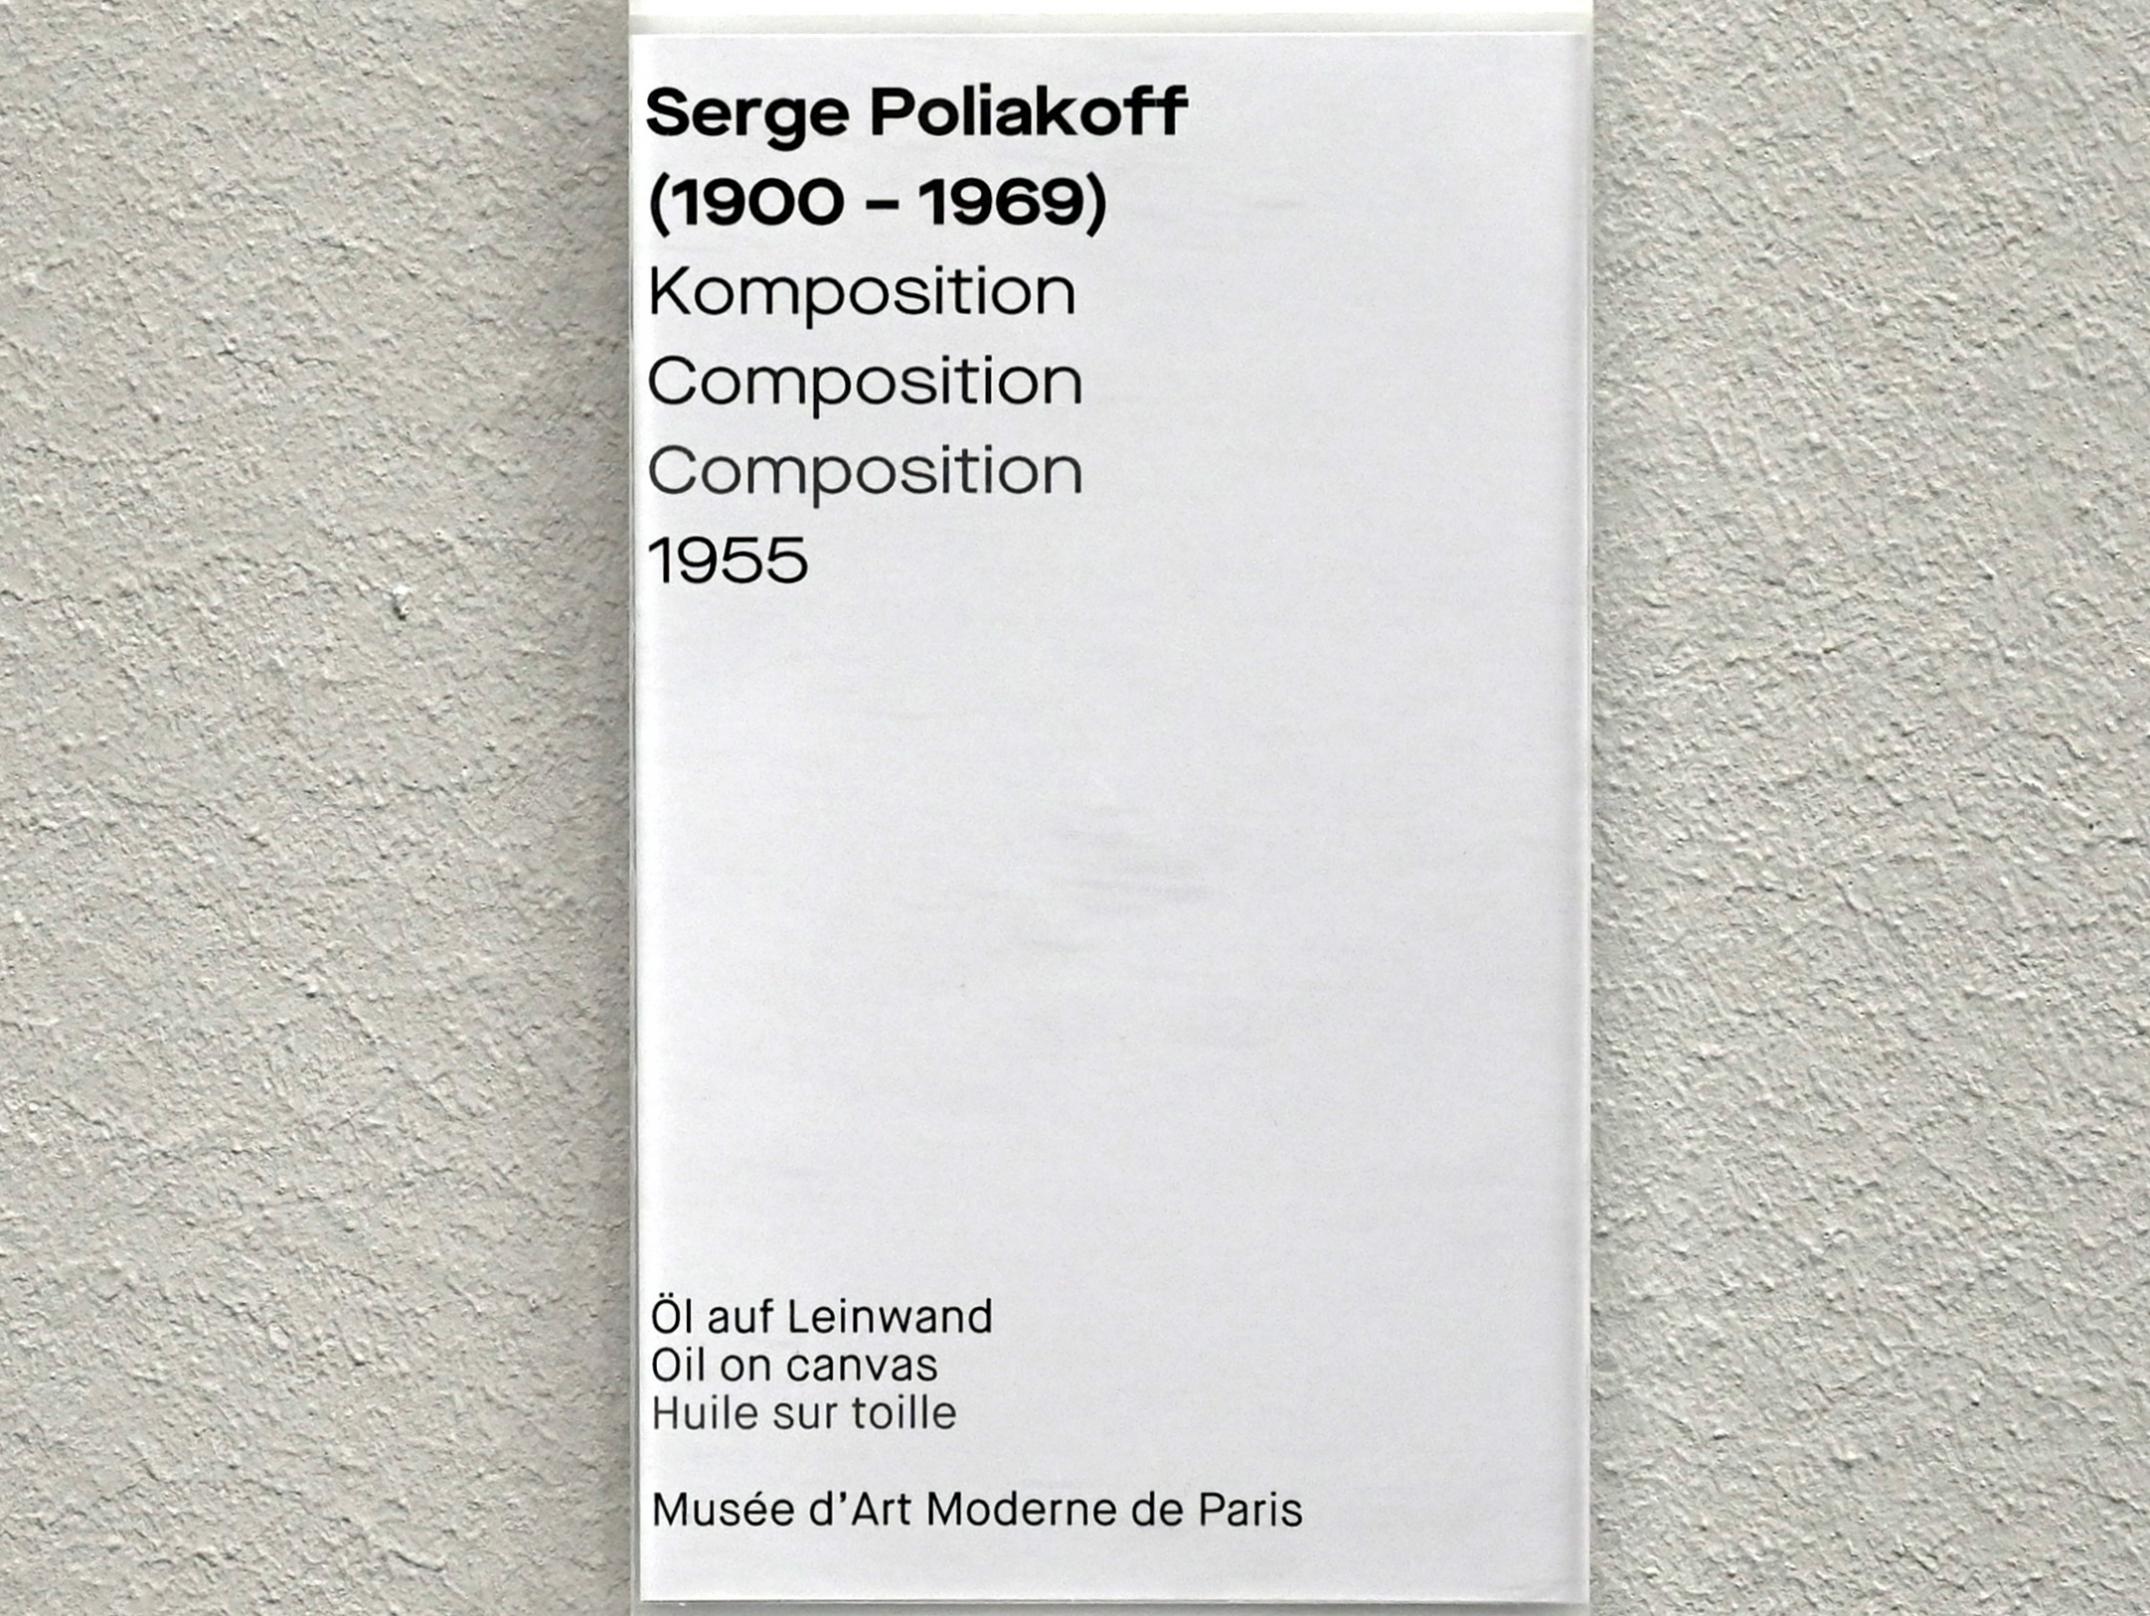 Serge Poliakoff (1936–1968), Komposition, Chemnitz, Museum Gunzenhauser, Saal 2.5 - Serge Poliakoff, 1955, Bild 2/2